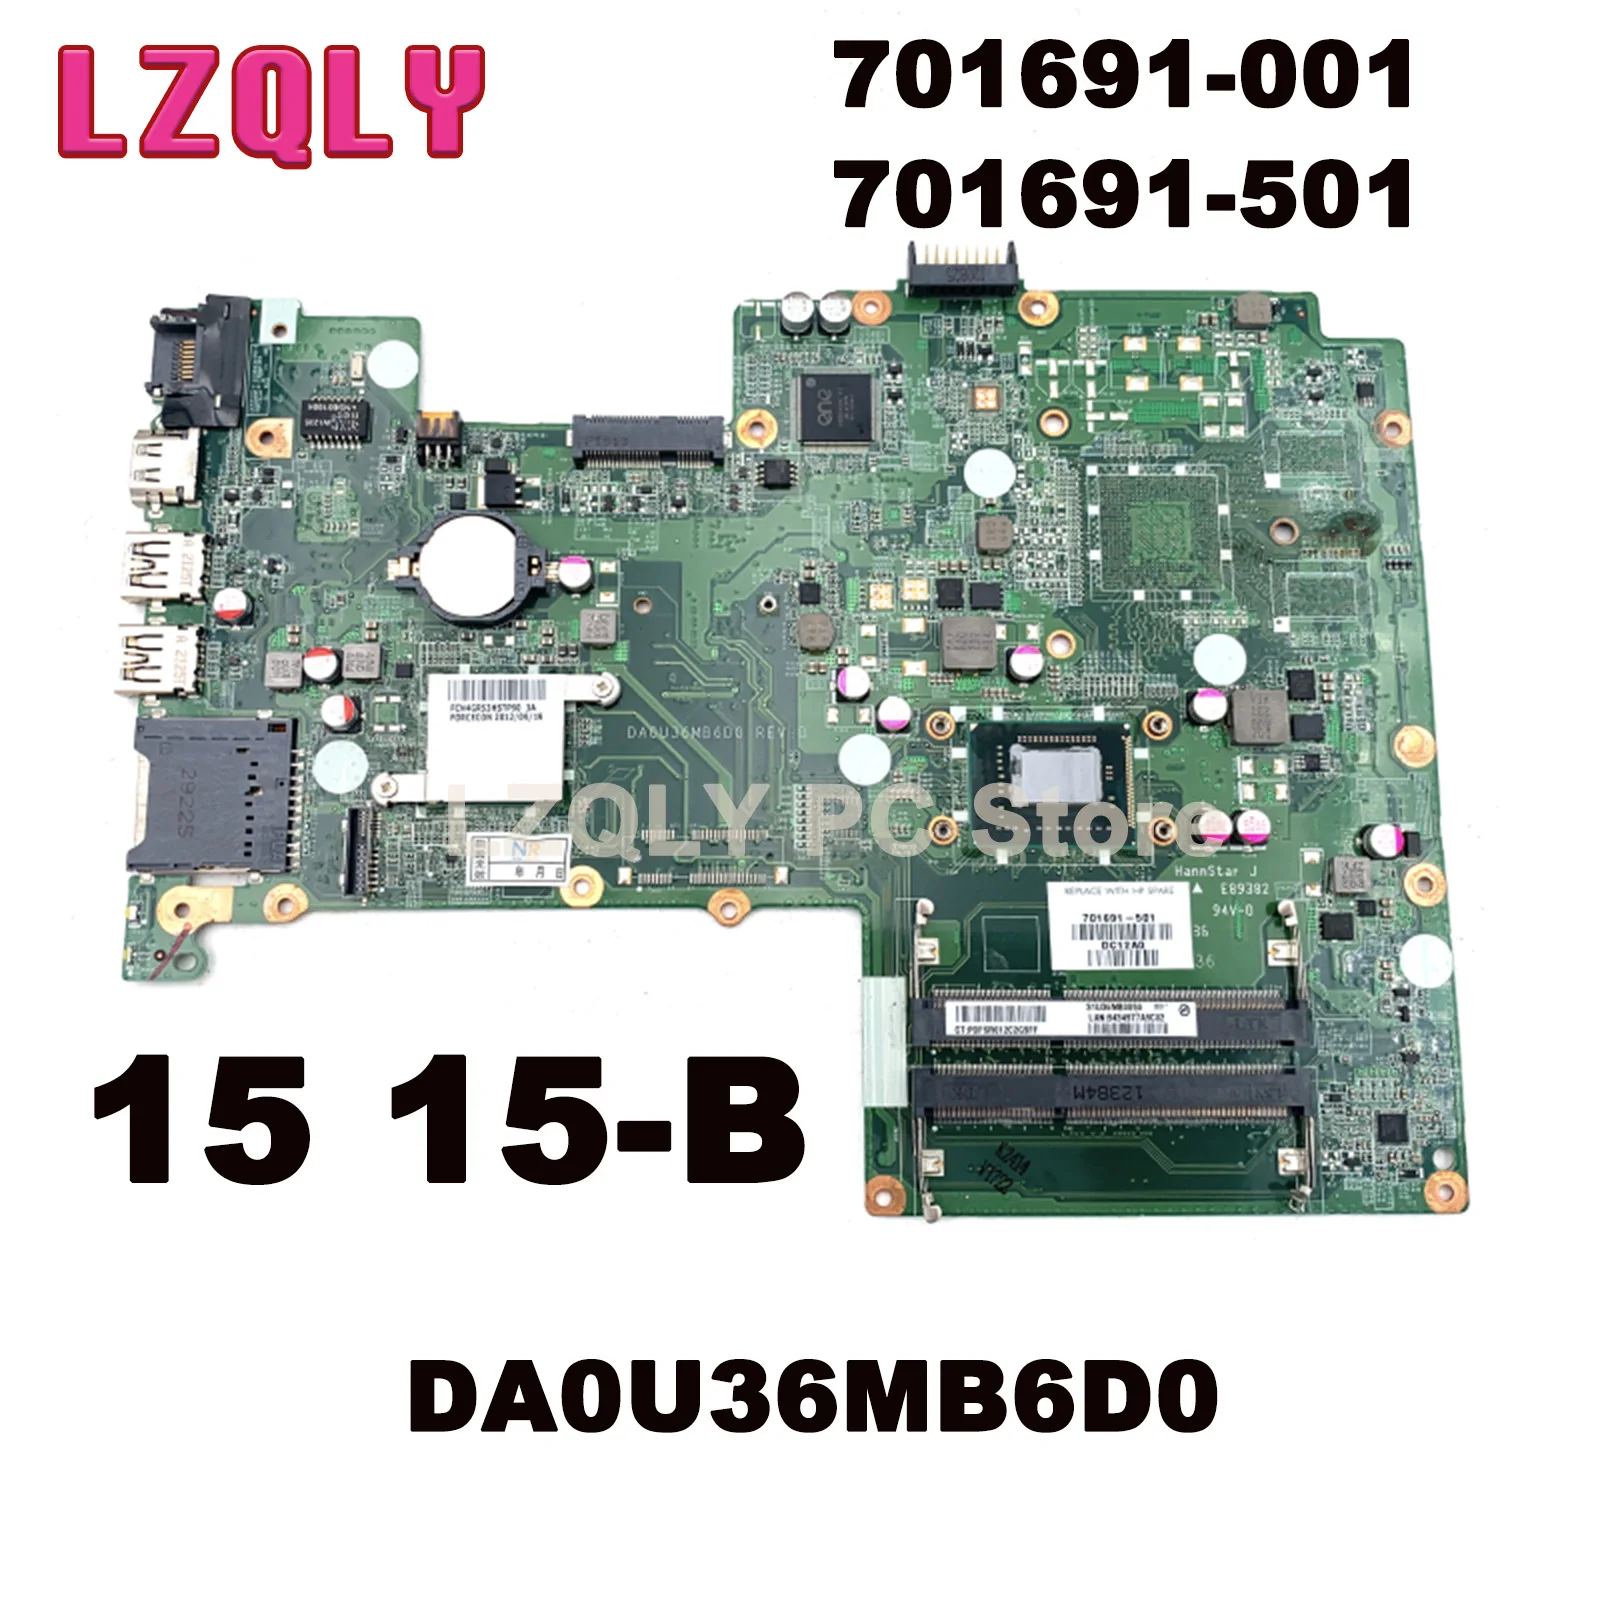 LZQLY за HP Pavilion 15 15-B 701691-001 701691-501 DA0U36MB6D0 дънна Платка на лаптоп SJTNV HM70 DDR3 Основна такса Пълен тест0